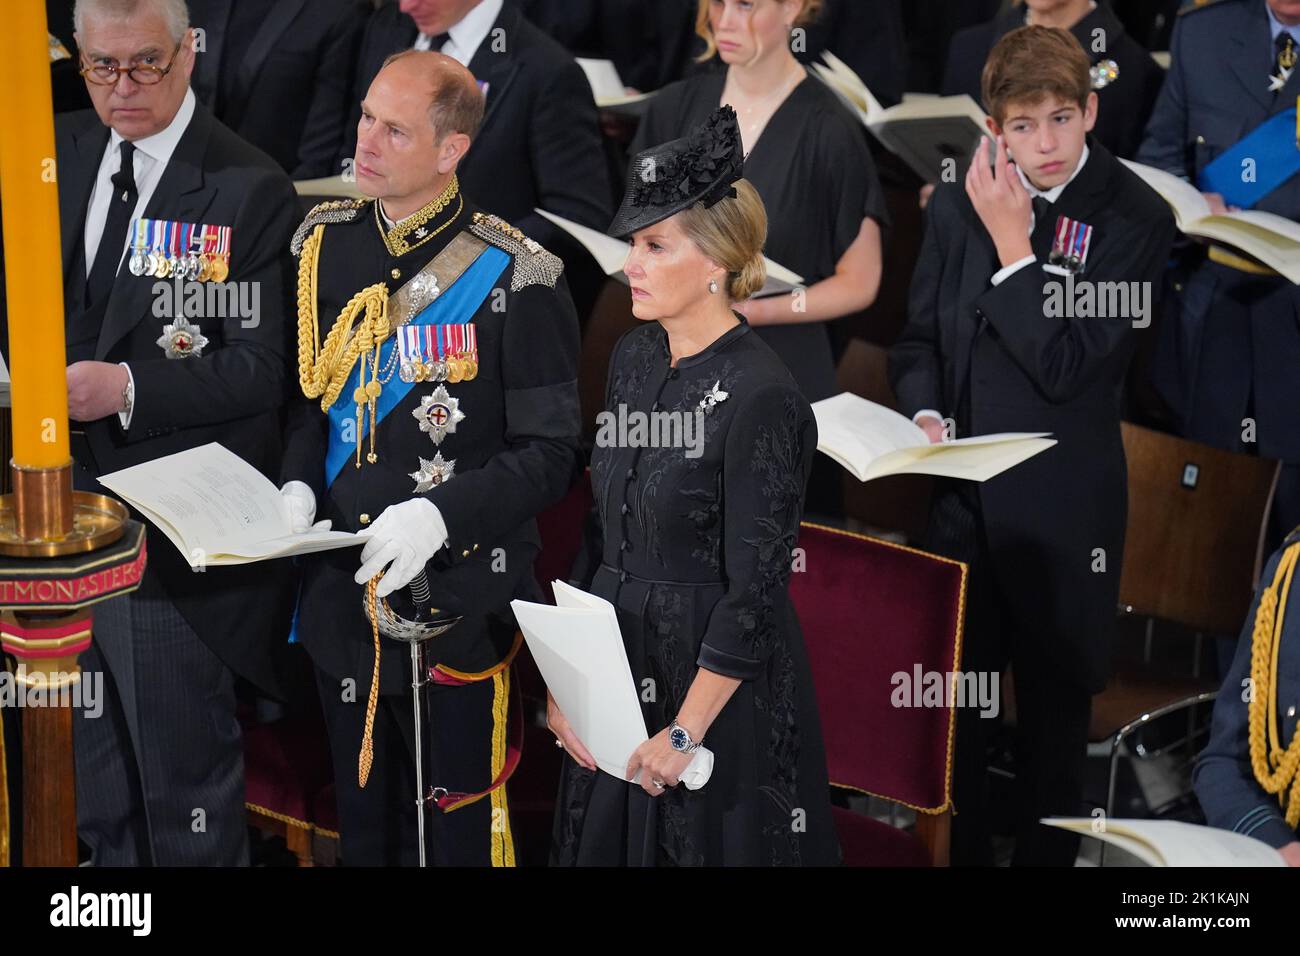 (Da sinistra a destra) il Duca di York, il Conte di Wessex, la Contessa di Wessex e James, Visconte Severn durante i funerali di Stato della Regina Elisabetta II presso l'Abbazia di Londra. Data immagine: Lunedì 19 settembre 2022. Foto Stock